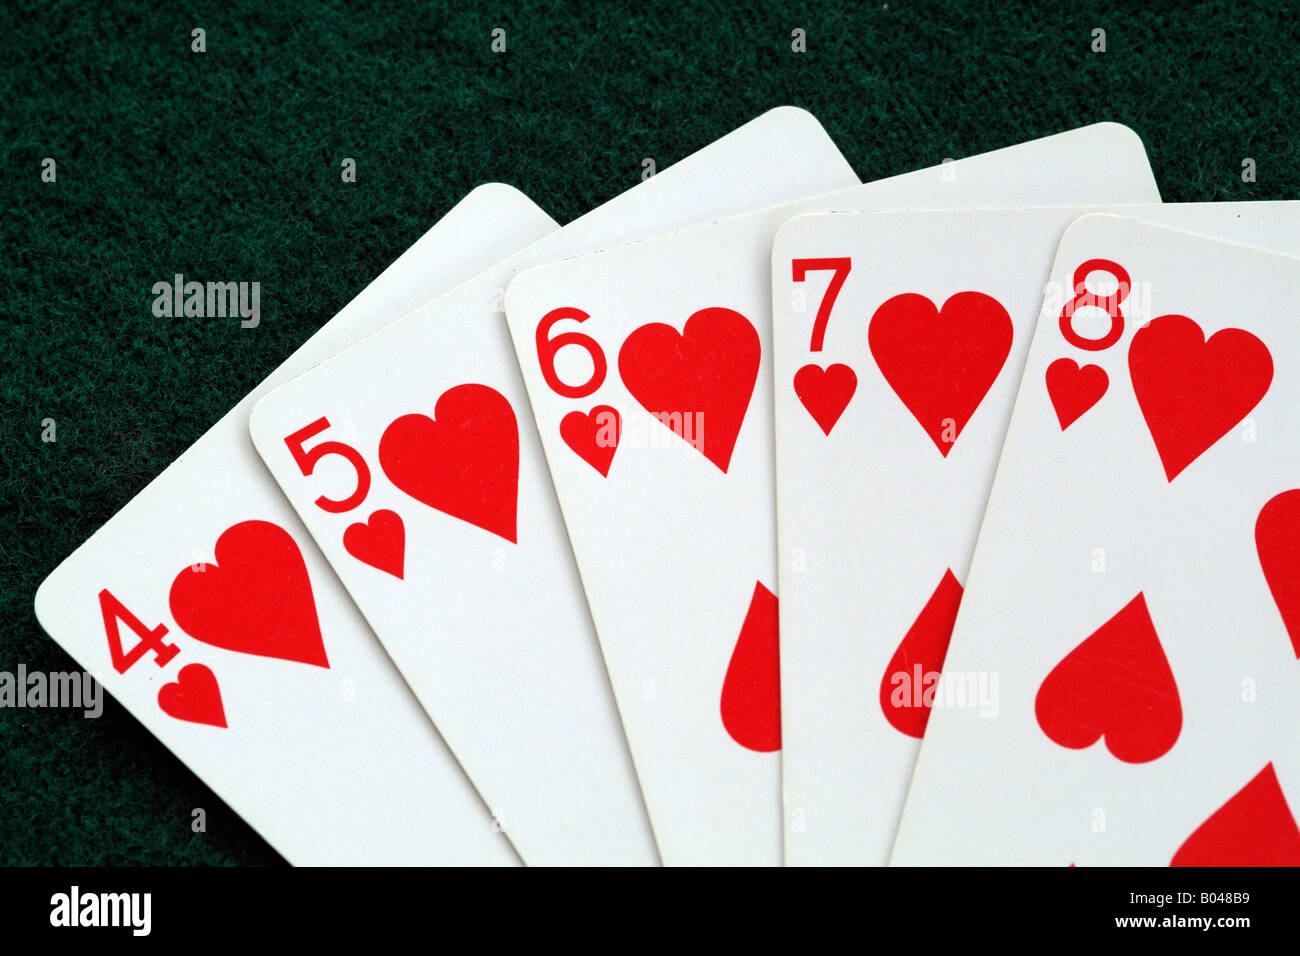 3 вида pokerdom: какой из них принесет больше всего денег?